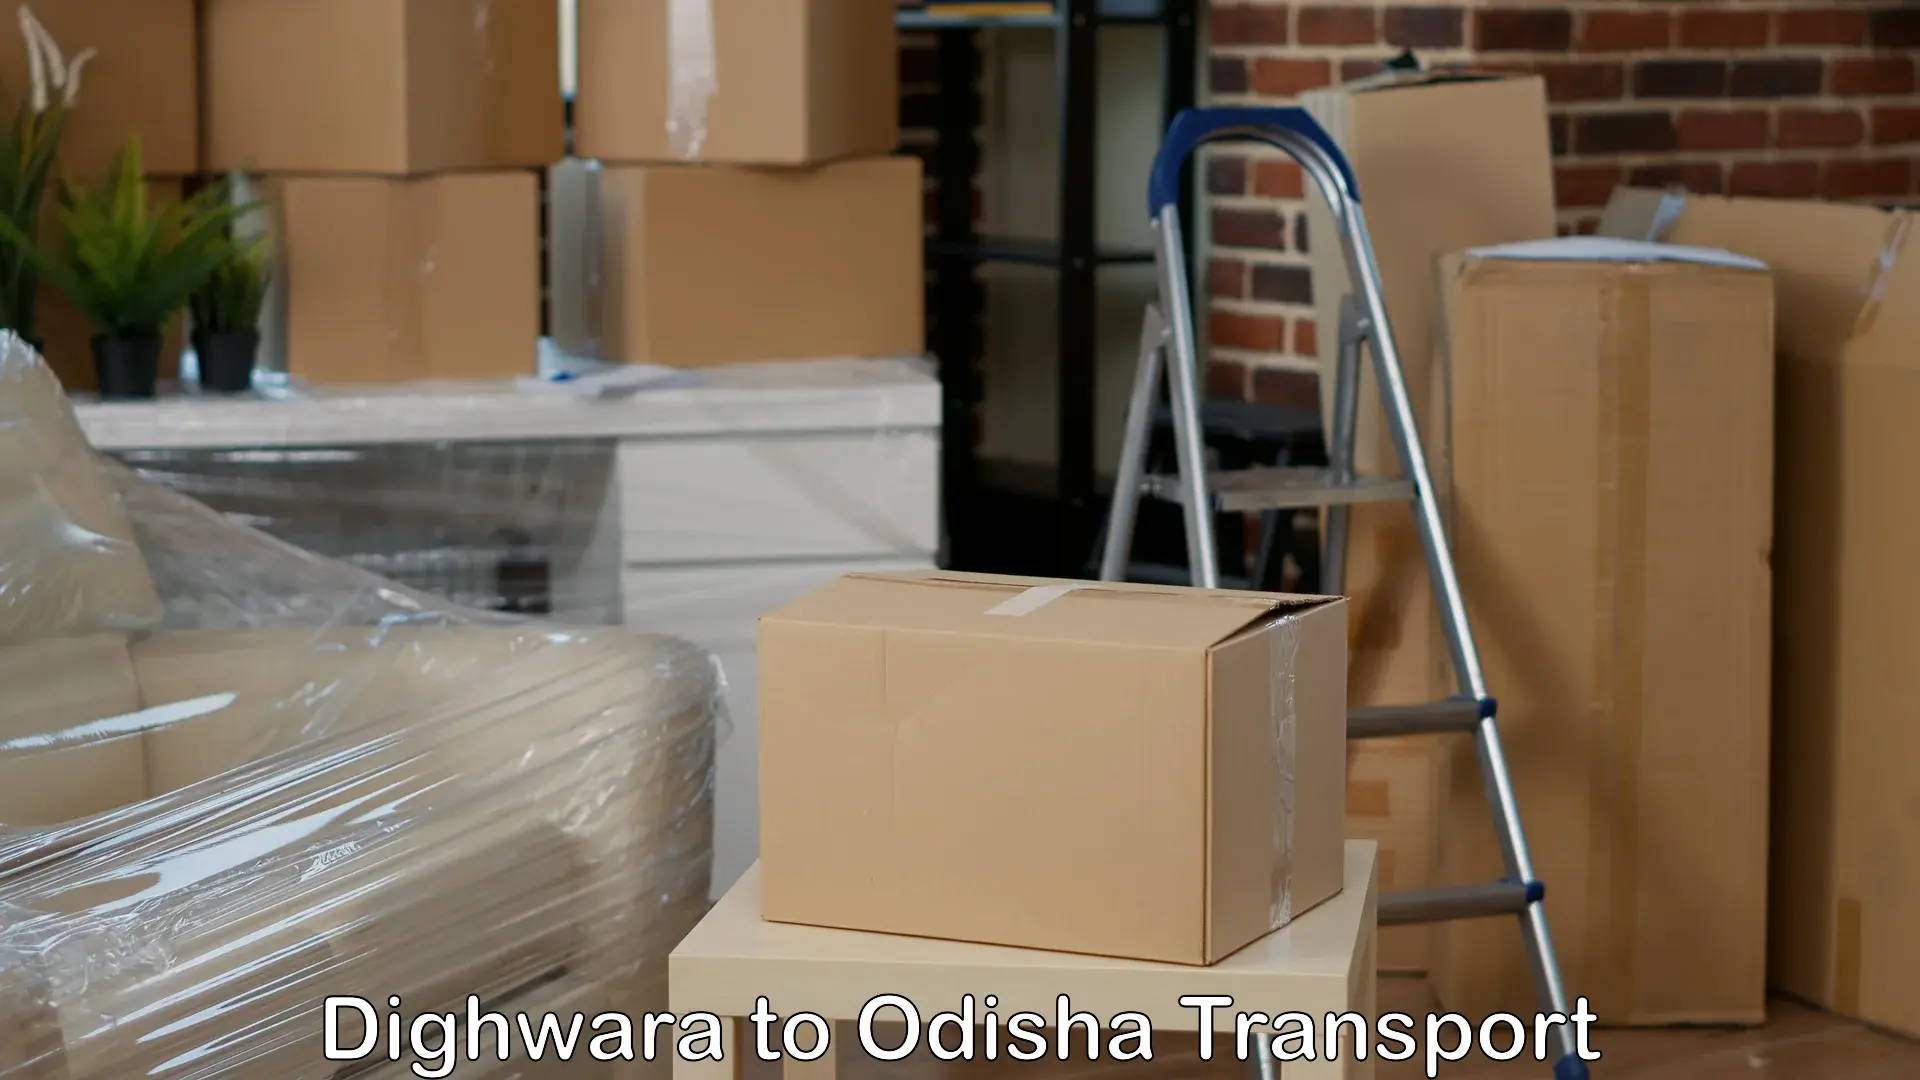 Furniture transport service Dighwara to Kendrapara